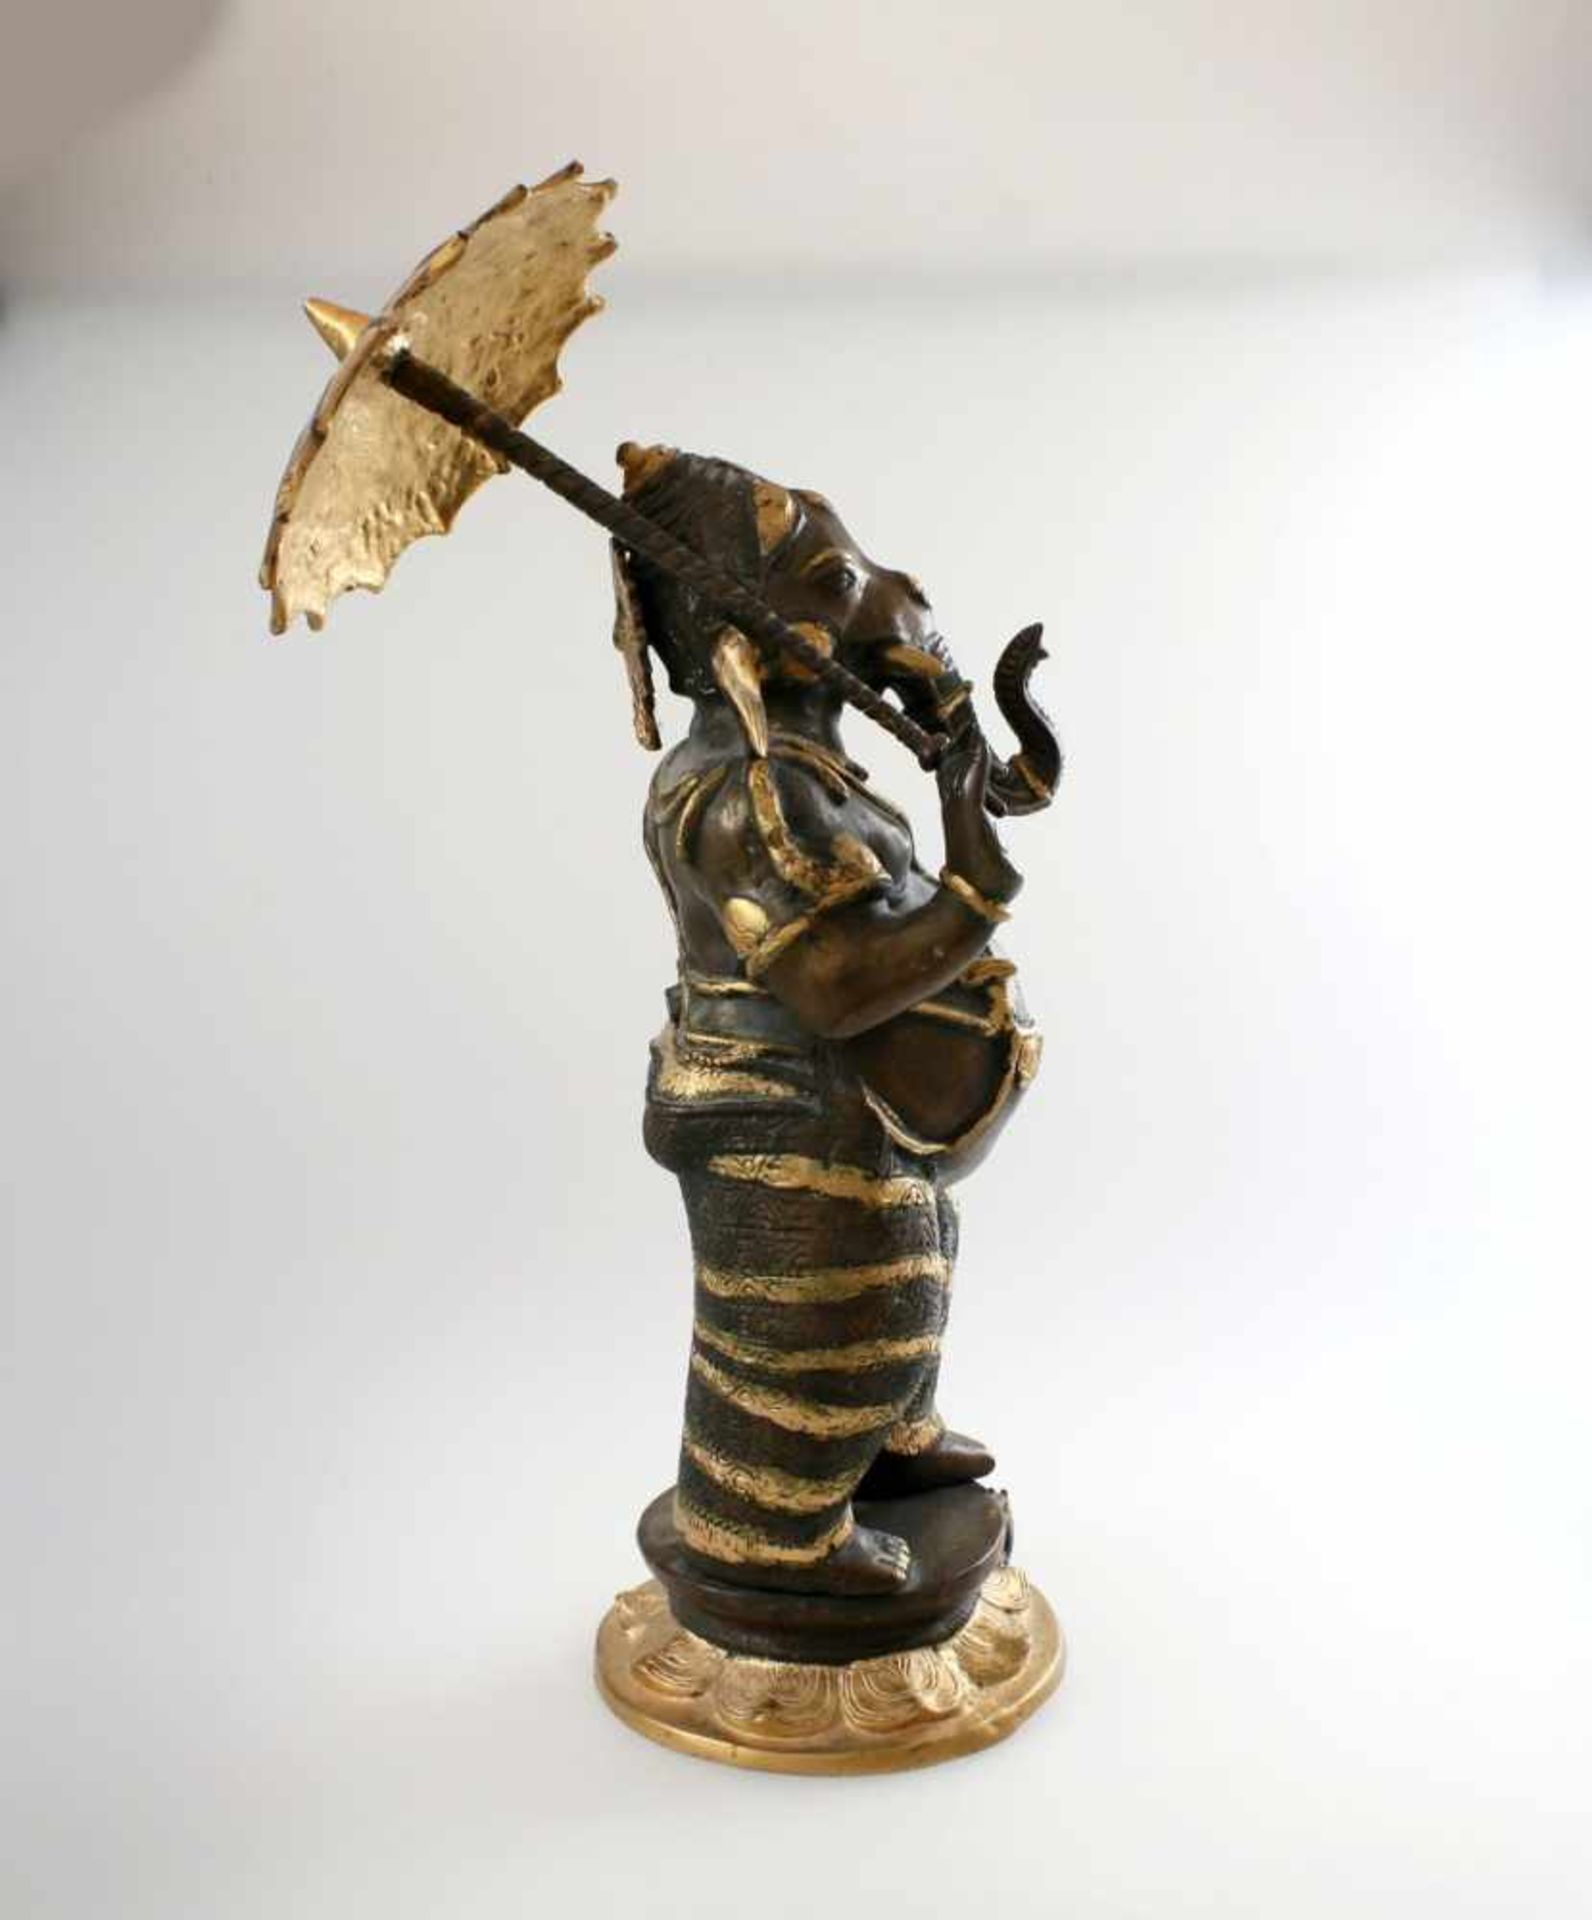 Ganesha mit Schirm - Nordindien In der rechten Schirm, in der linken Hand Teegefäß haltend, - Bild 4 aus 6